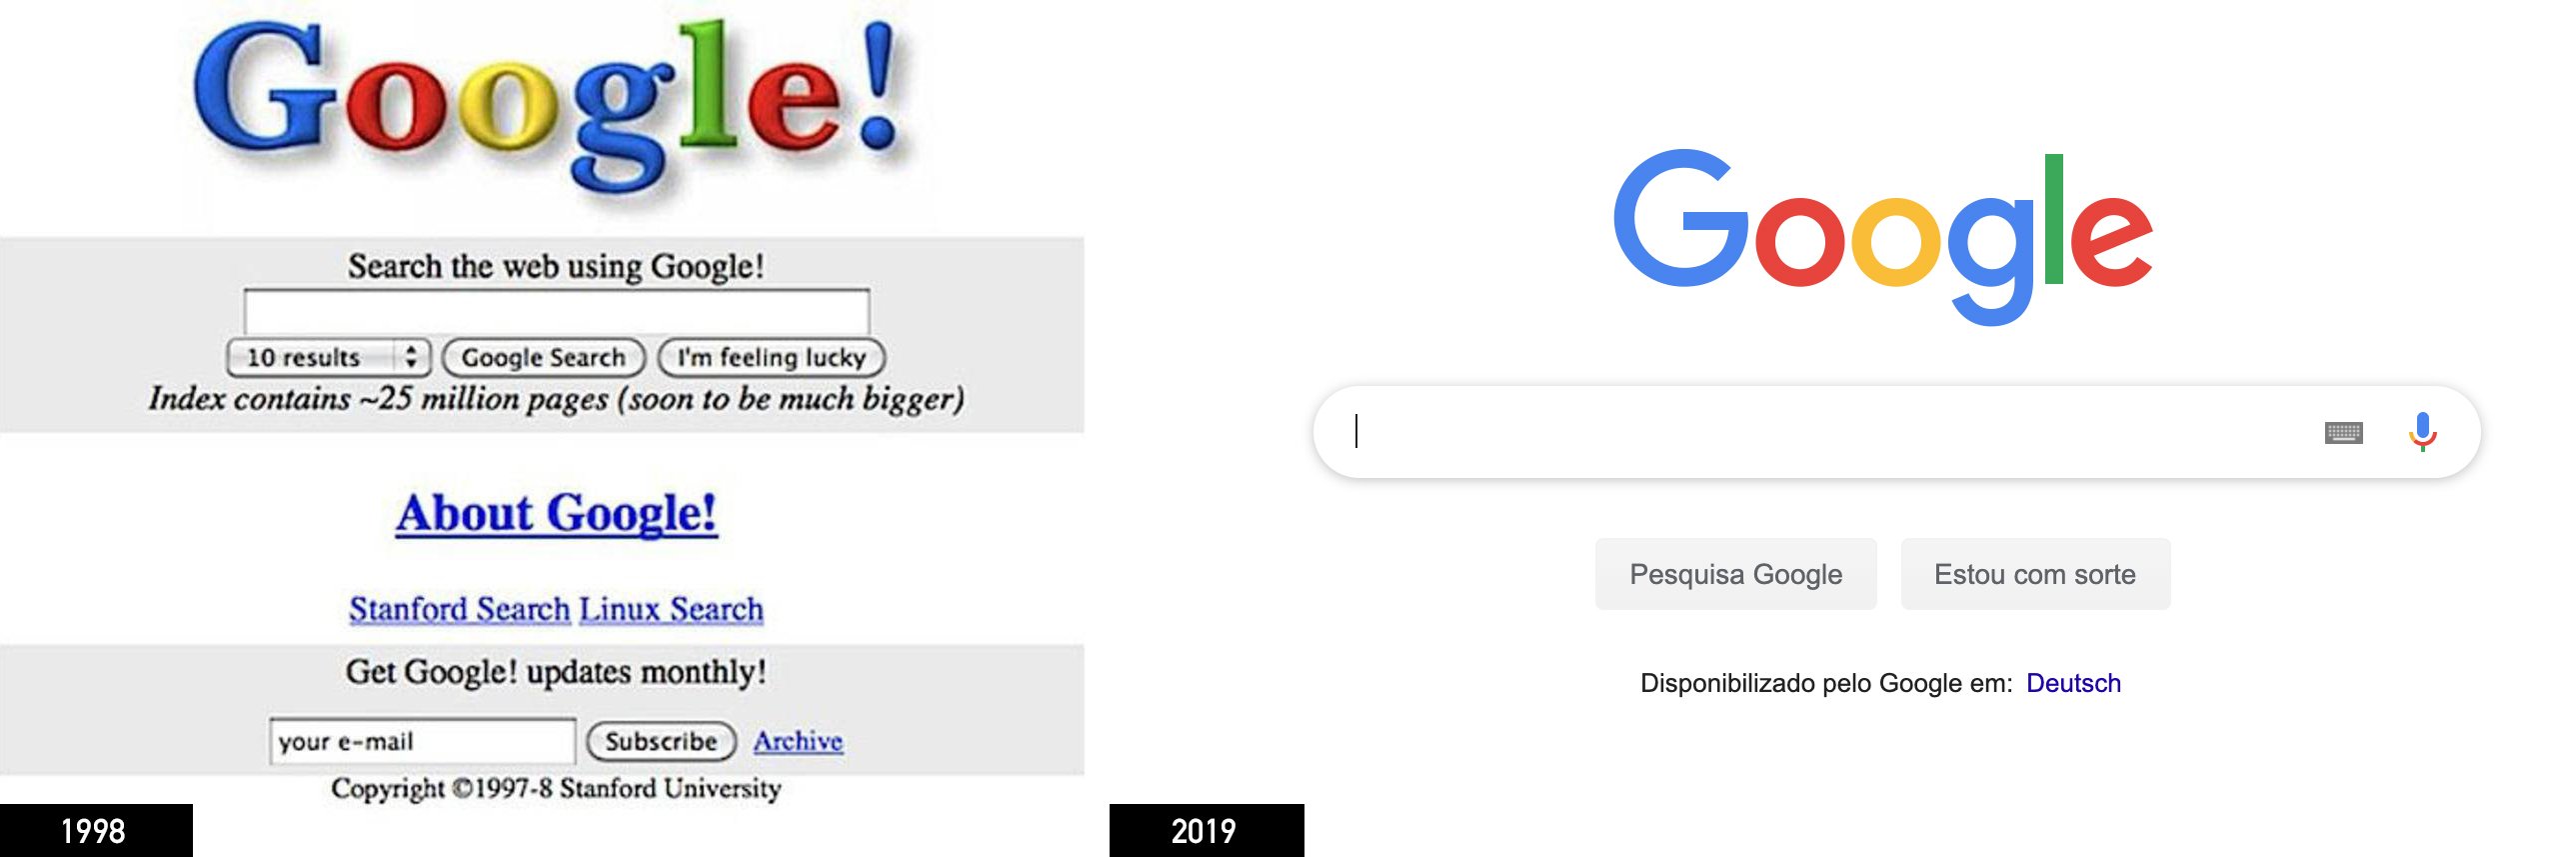 Google 1998 och 2019